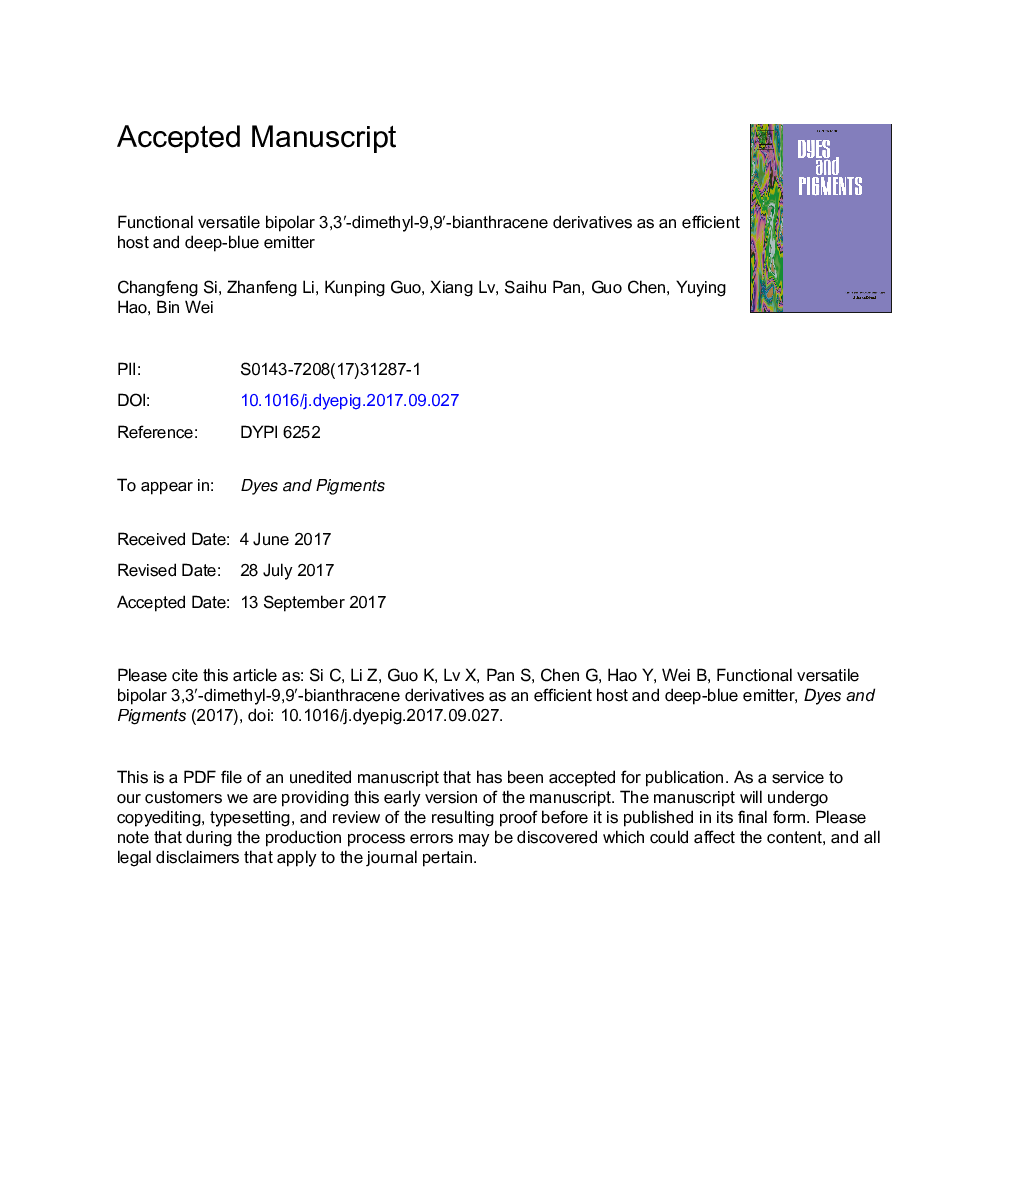 Functional versatile bipolar 3,3â²-dimethyl-9,9â²-bianthracene derivatives as an efficient host and deep-blue emitter